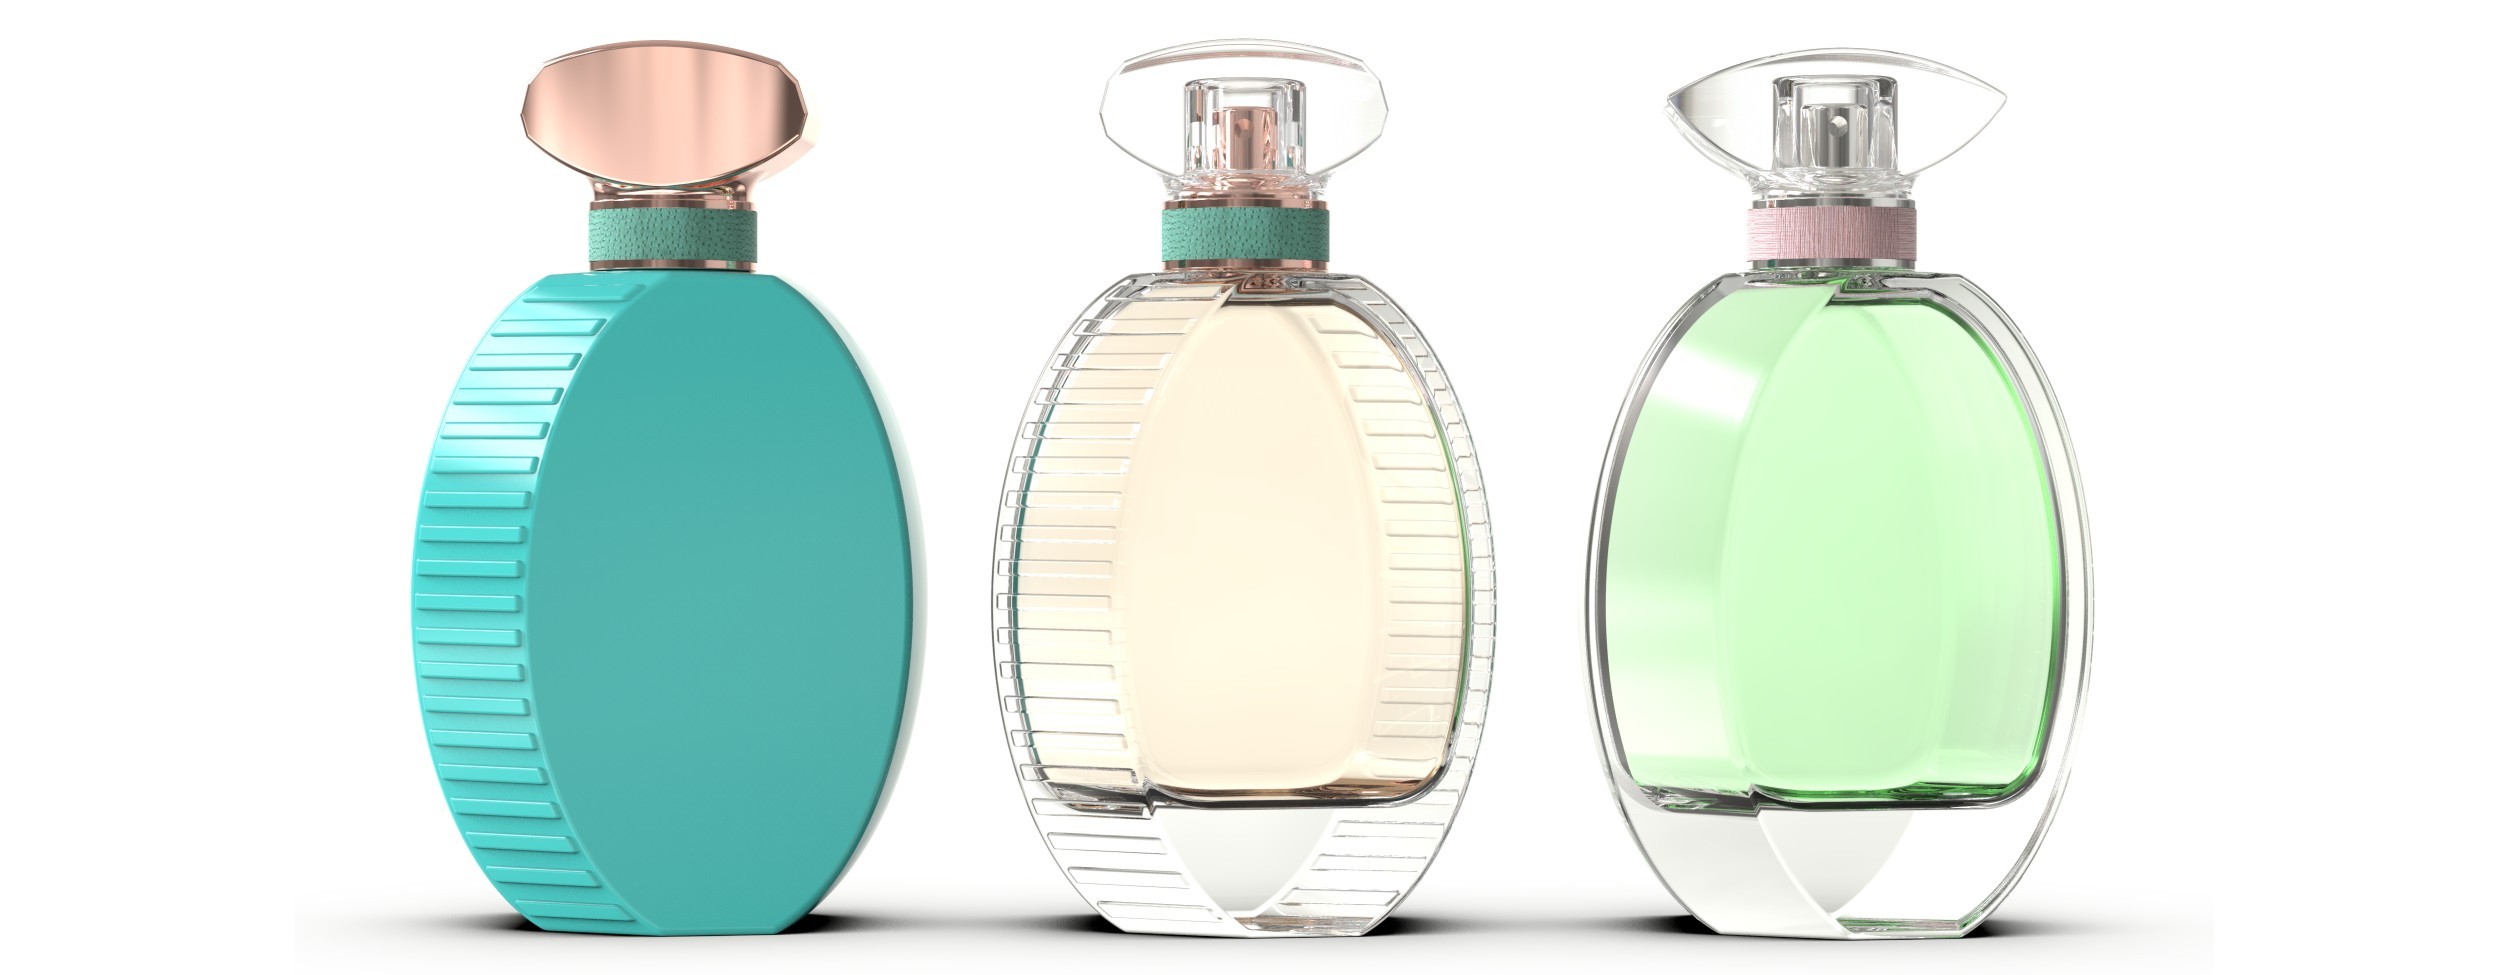 new design perfume bottles